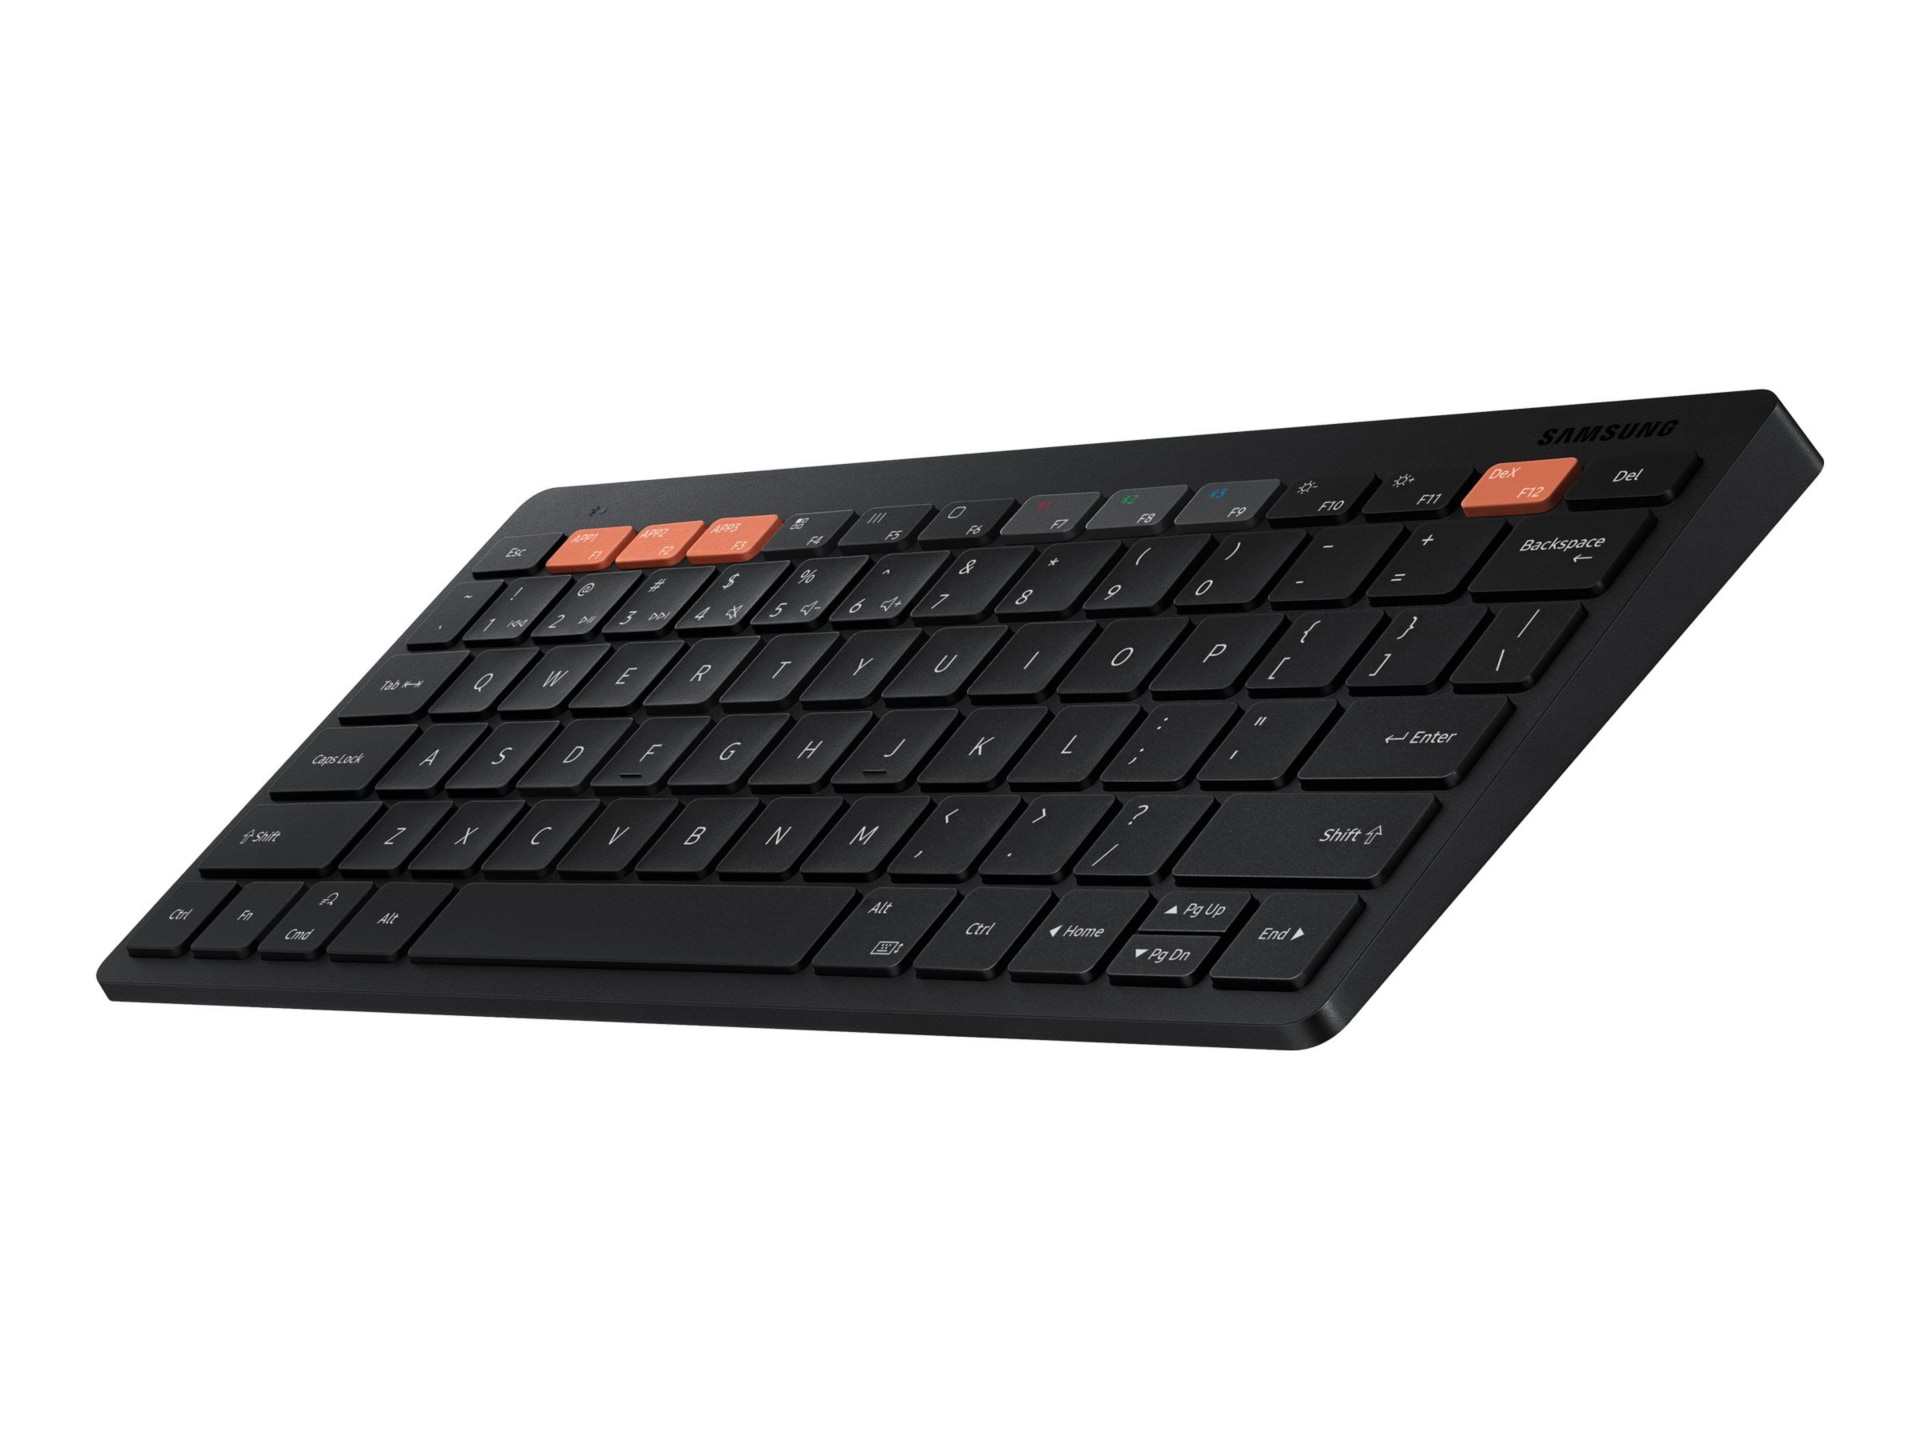 Samsung Smart Keyboard Trio 500 EJ-B3400 - keyboard - black